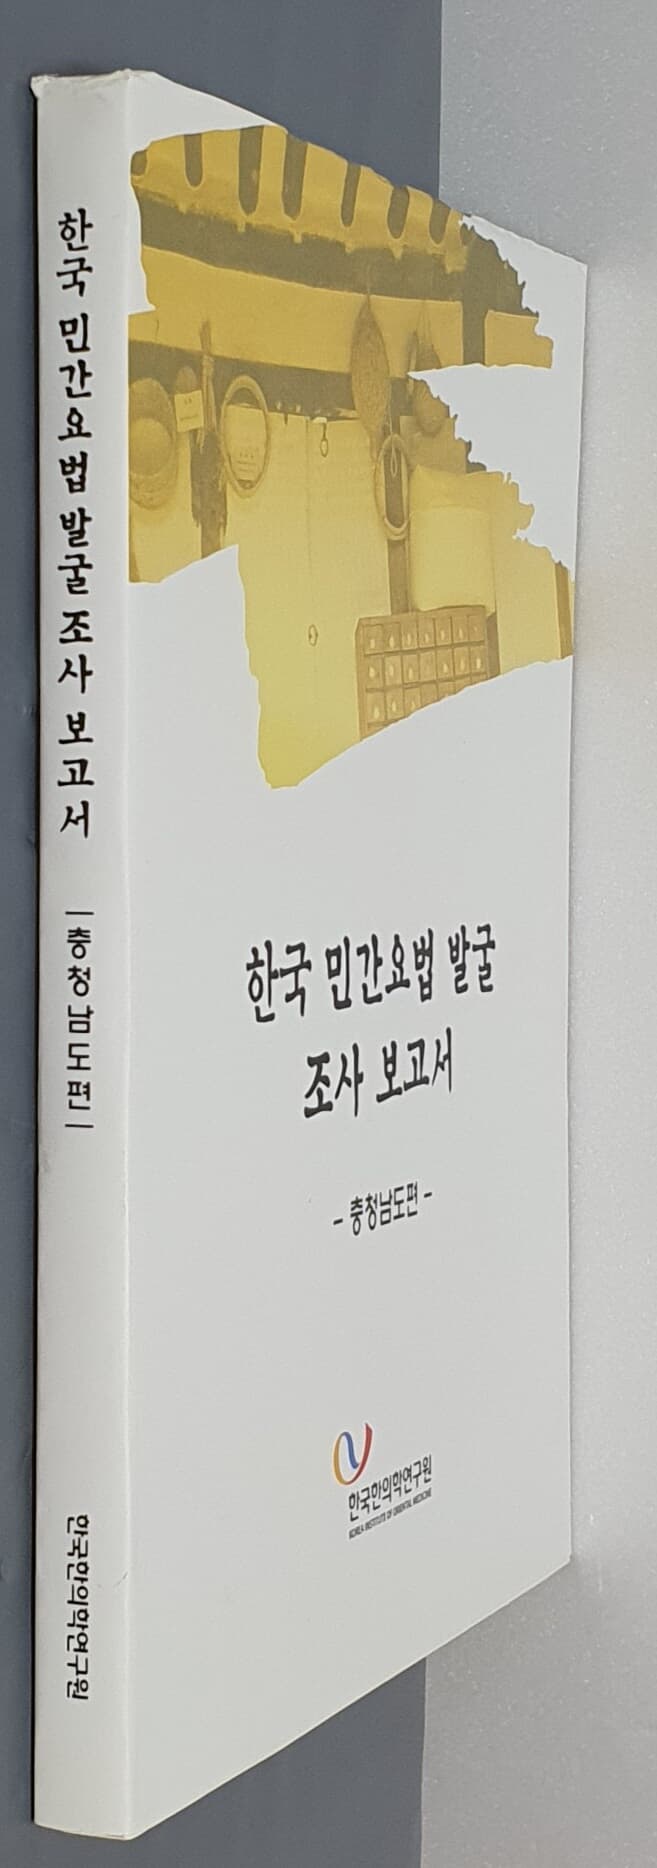 한국 민간요법 발굴 조서 보고서 - 충청남도펀